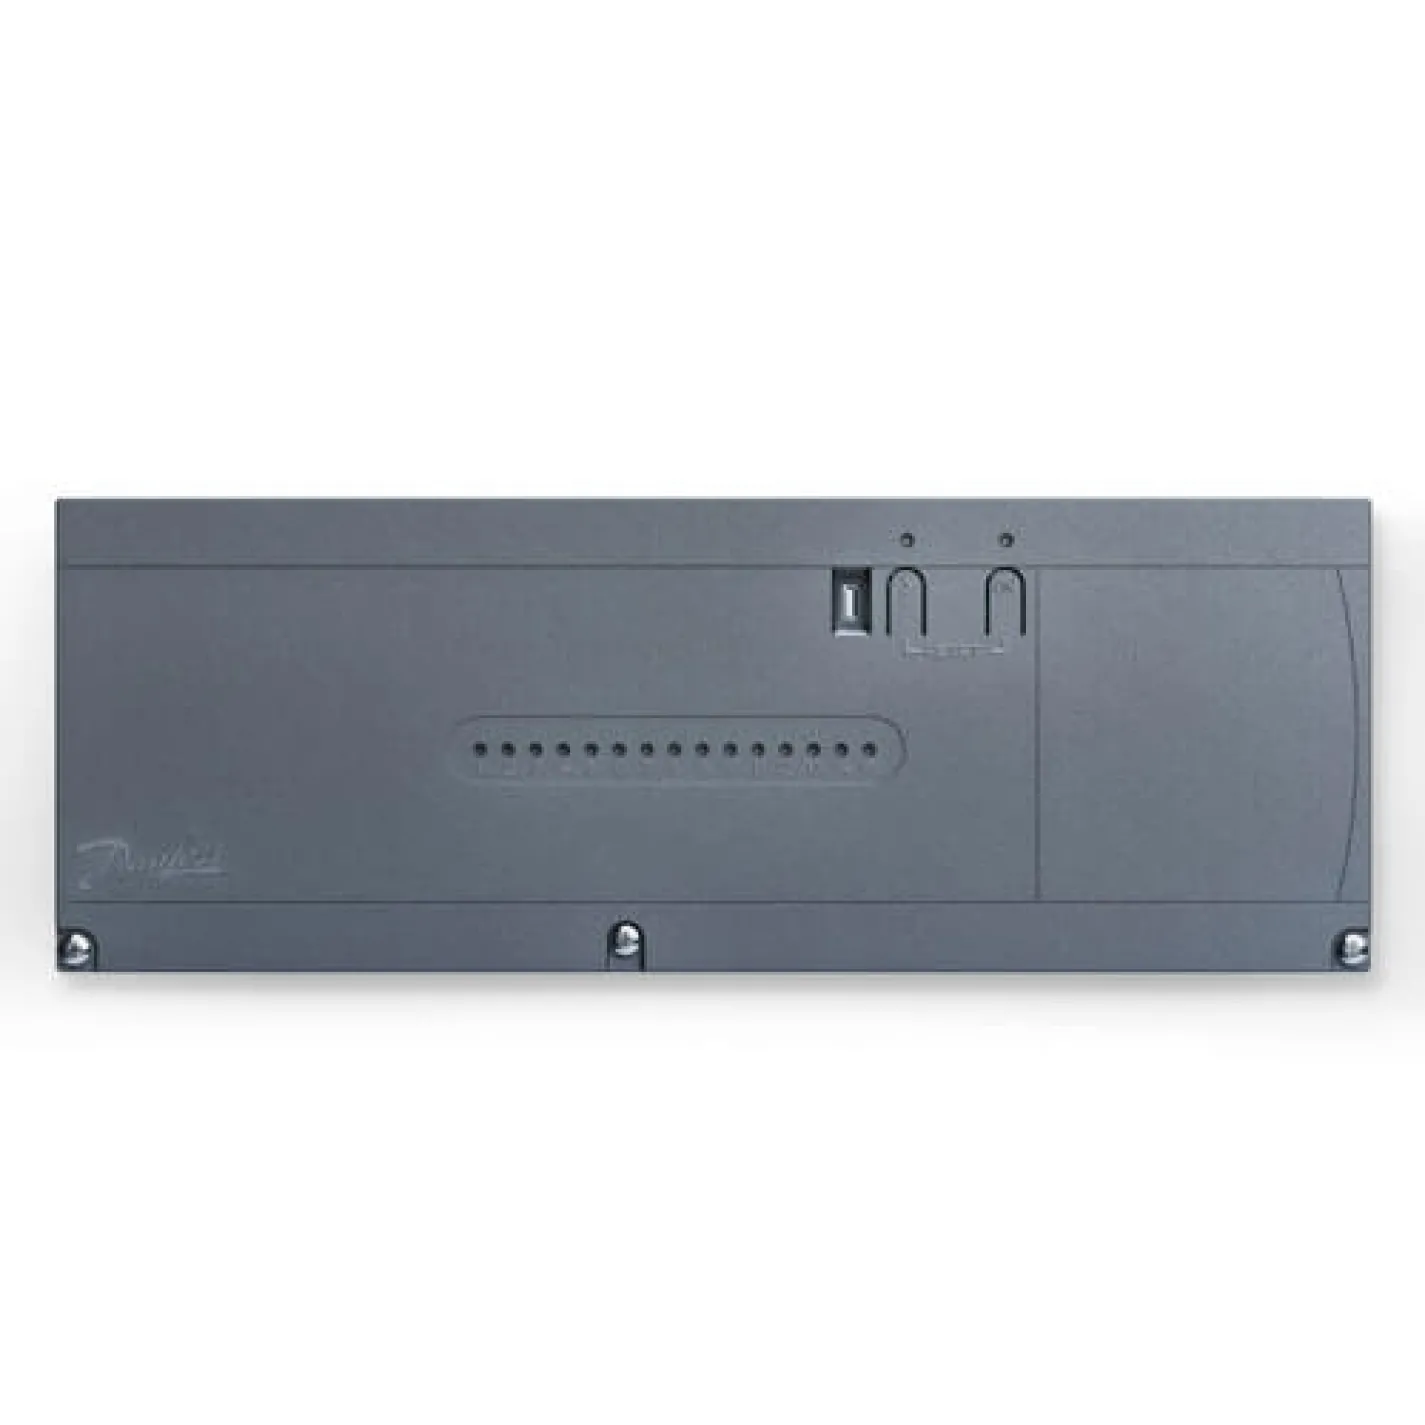 Главный контроллер Danfoss Icon2 Basic 230 В 15-канальный EU (088U2100) - Фото 1